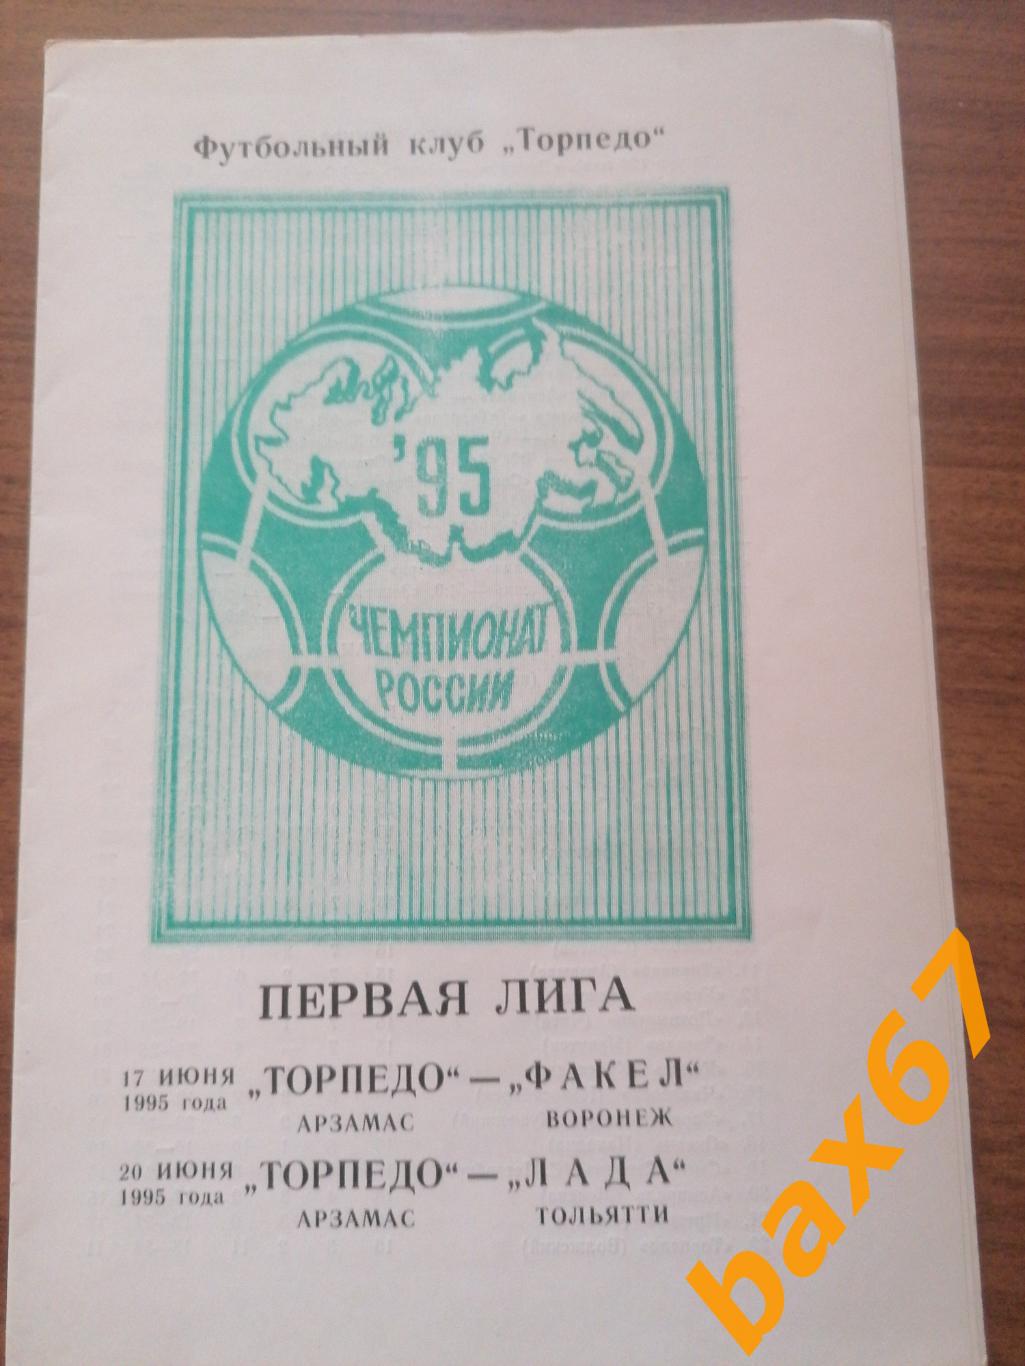 Торпедо Арзамас-Факел Воронеж, Лада Тольятти 17-20.06.1995